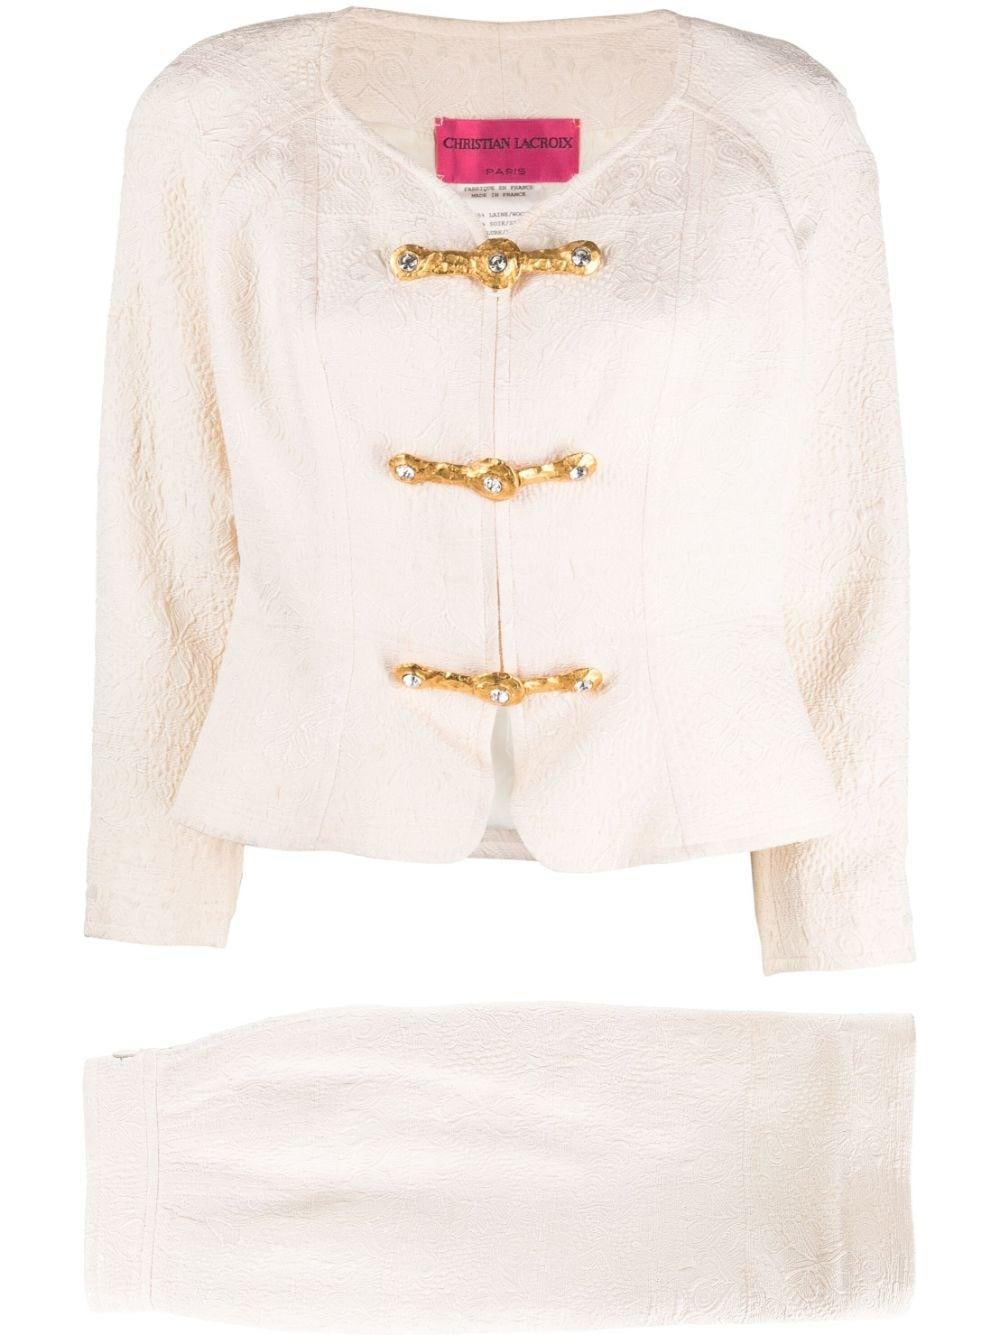 Christian Lacroix Cream Jacquard Skirt Suit For Sale 4